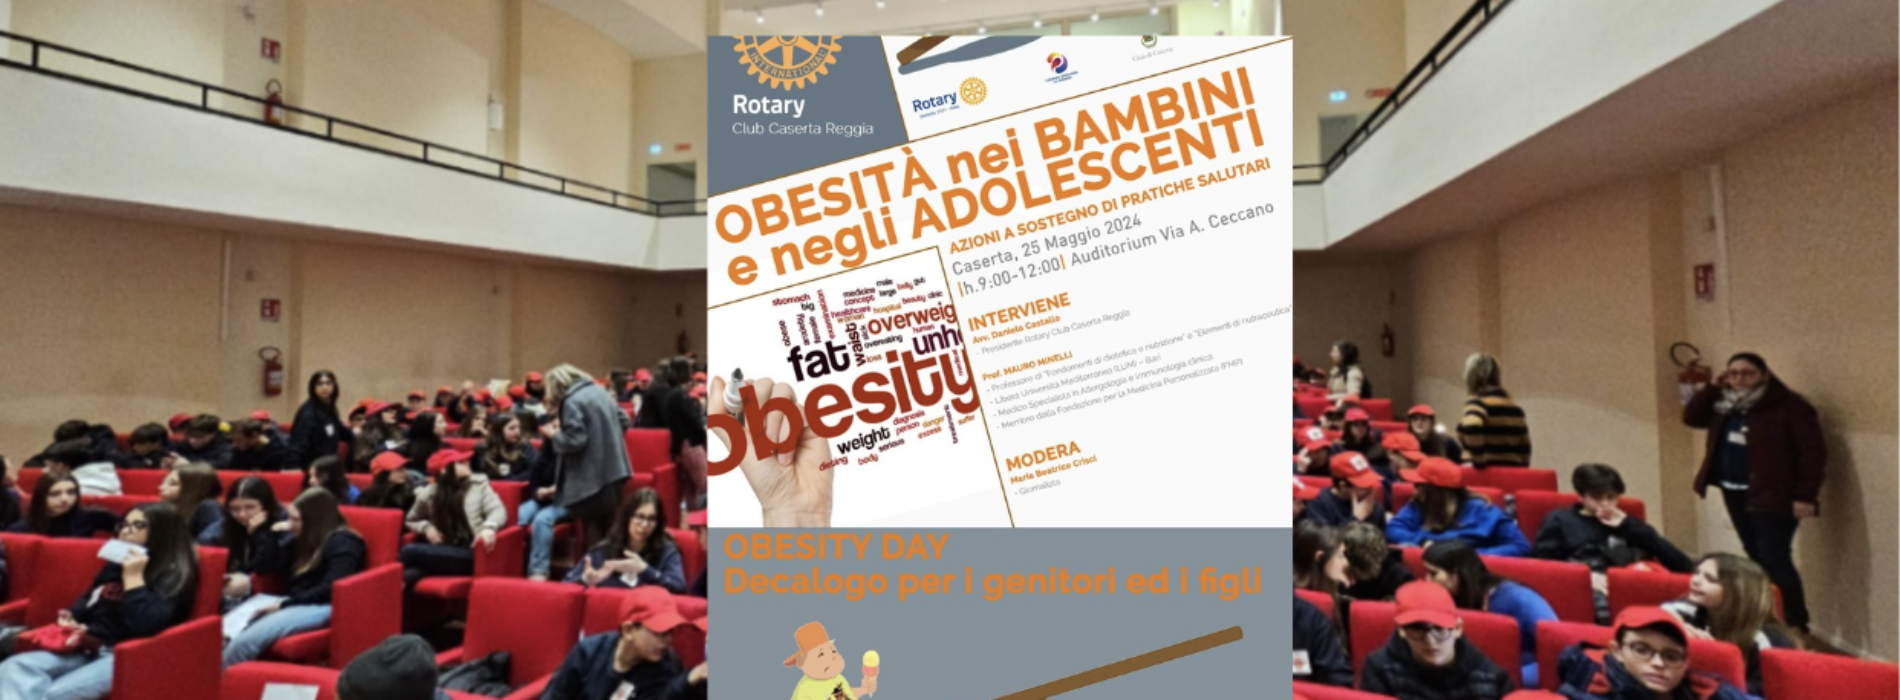 Rotary Caserta Reggia. Focus, obesità nei bambini e negli adolescenti